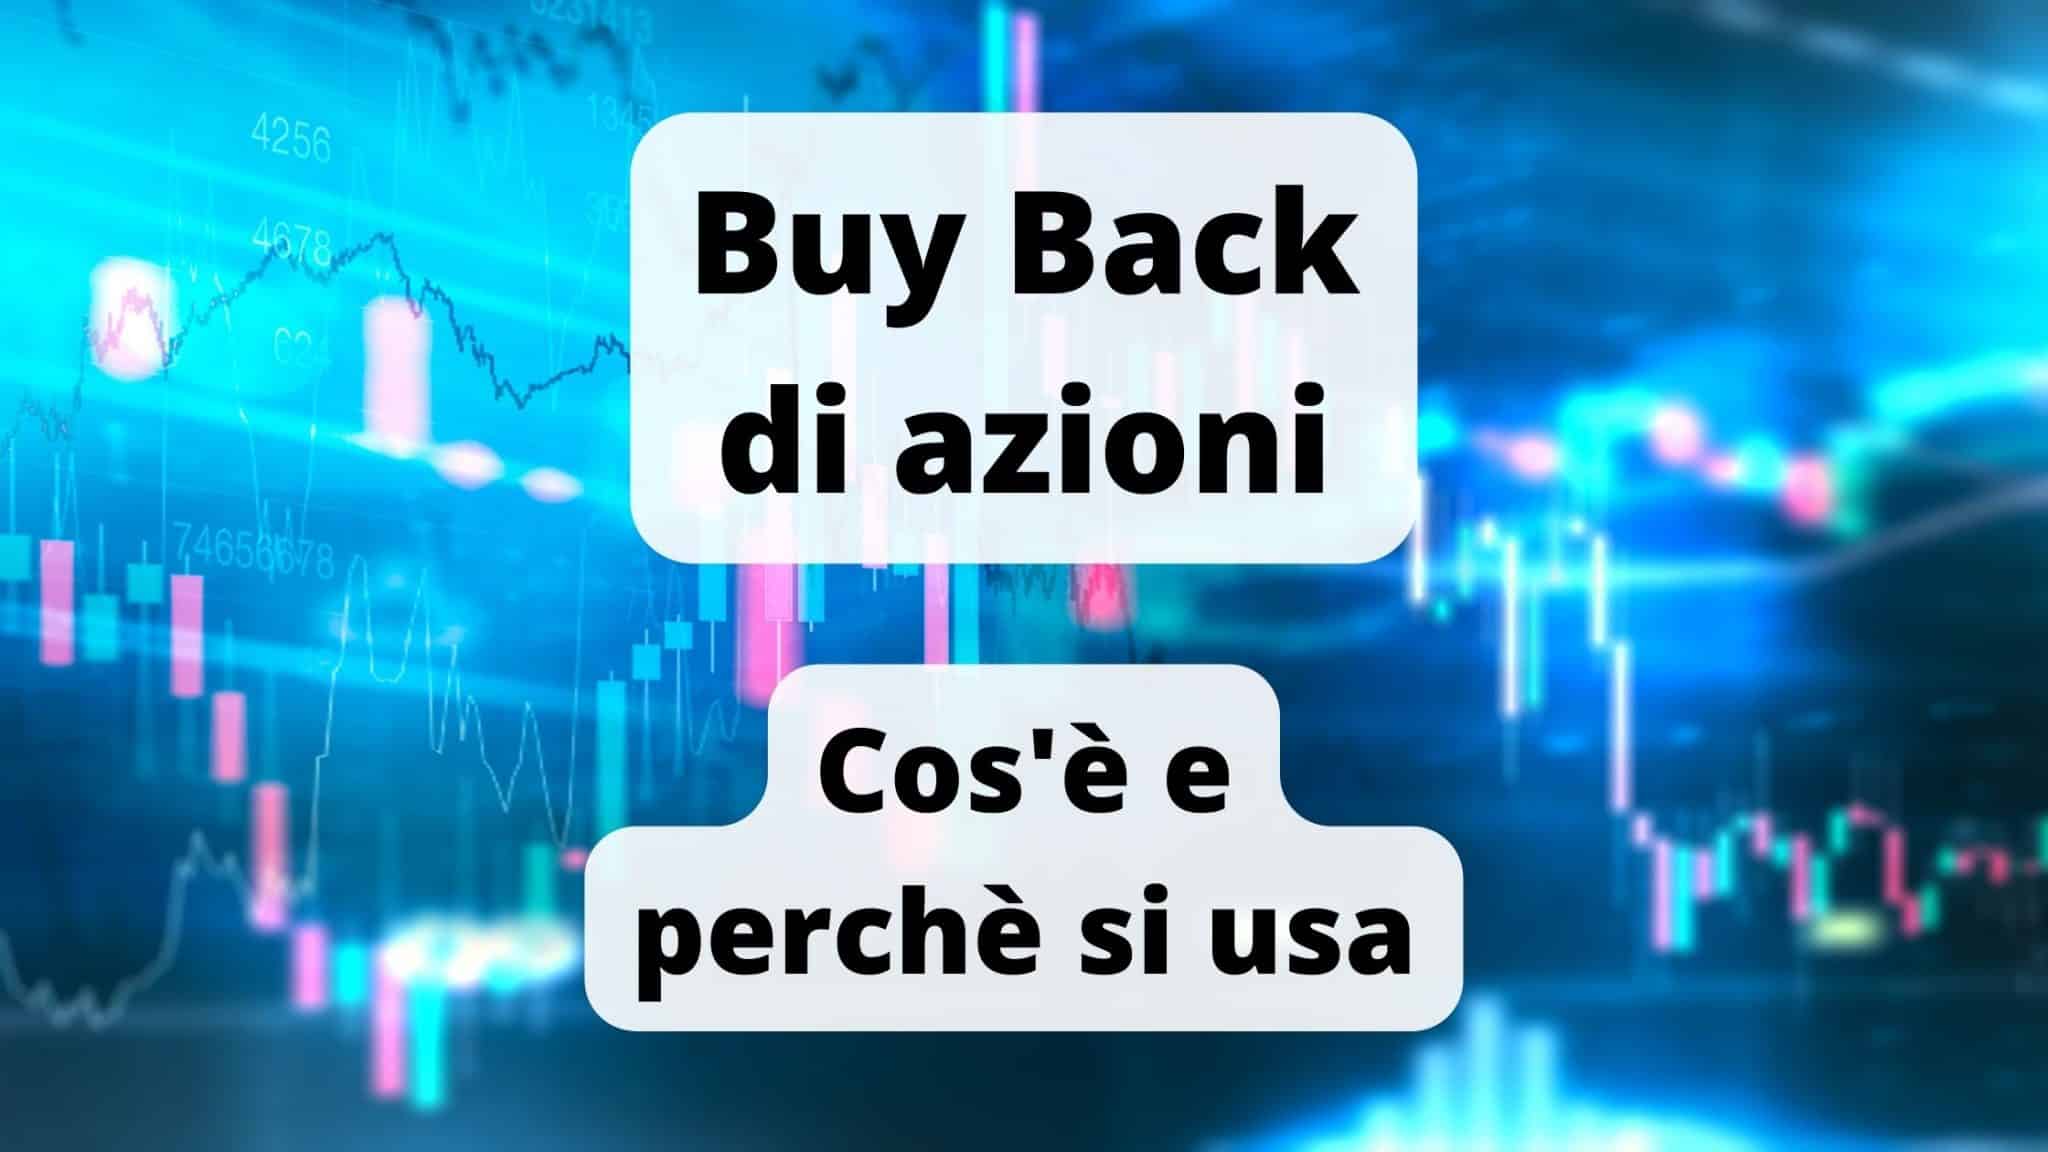 Buy Back di azioni